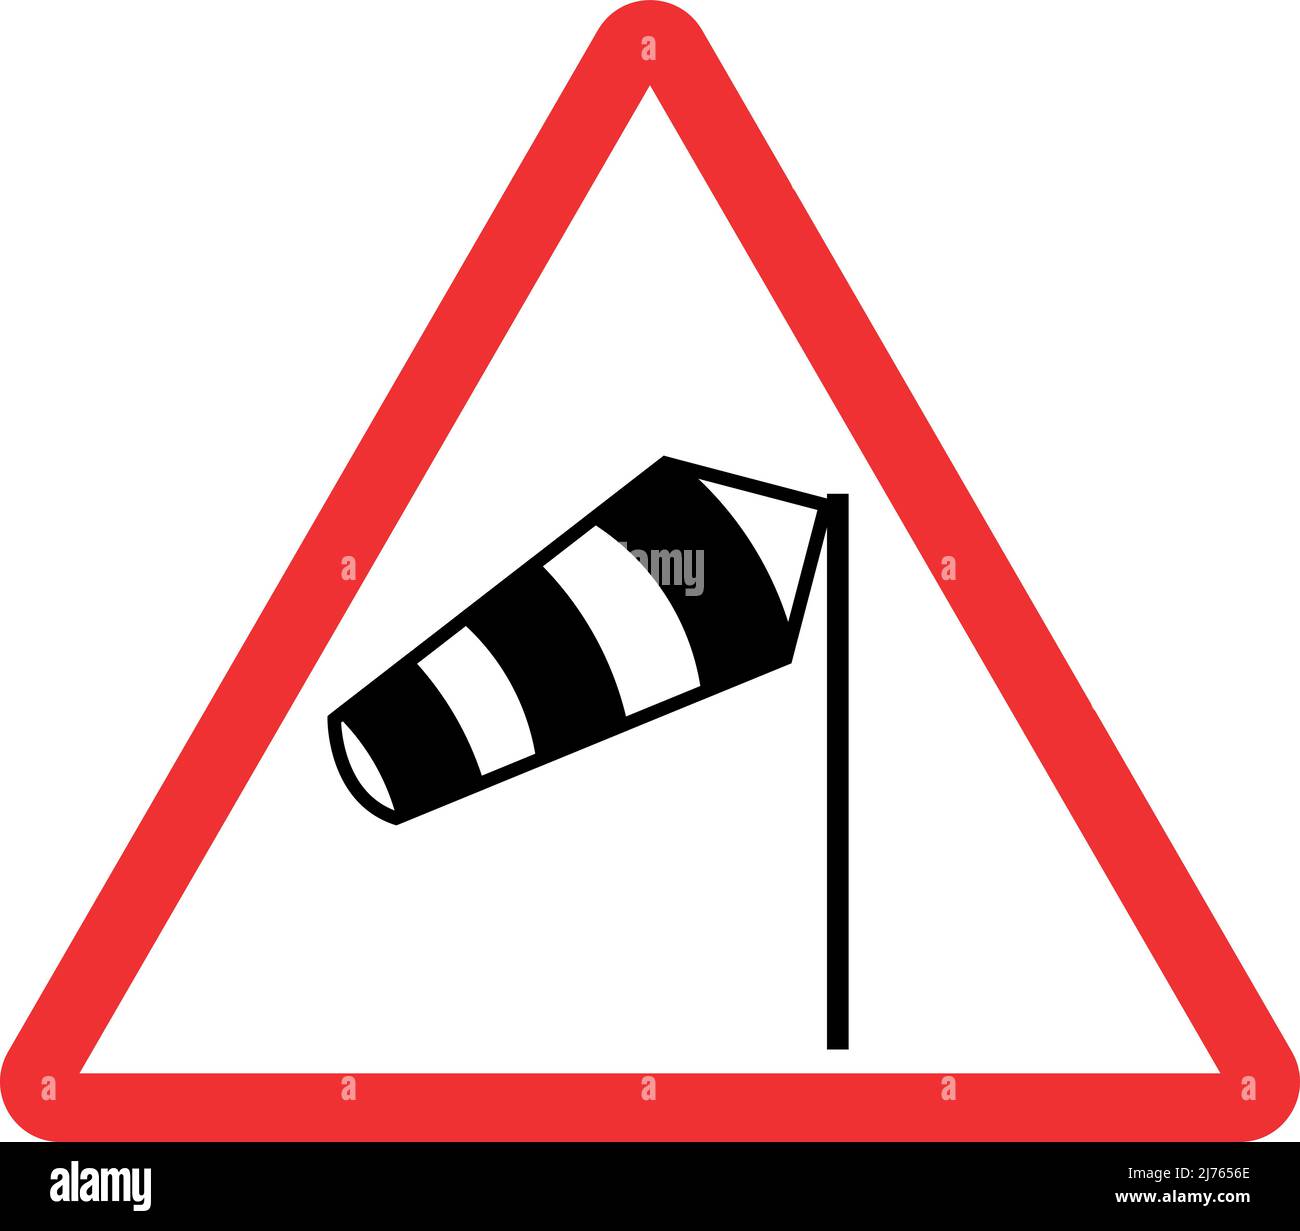 Warnschild Seitenwind von rechts. Roter Dreieckhintergrund. Verkehrszeichen und -Symbole. Stock Vektor